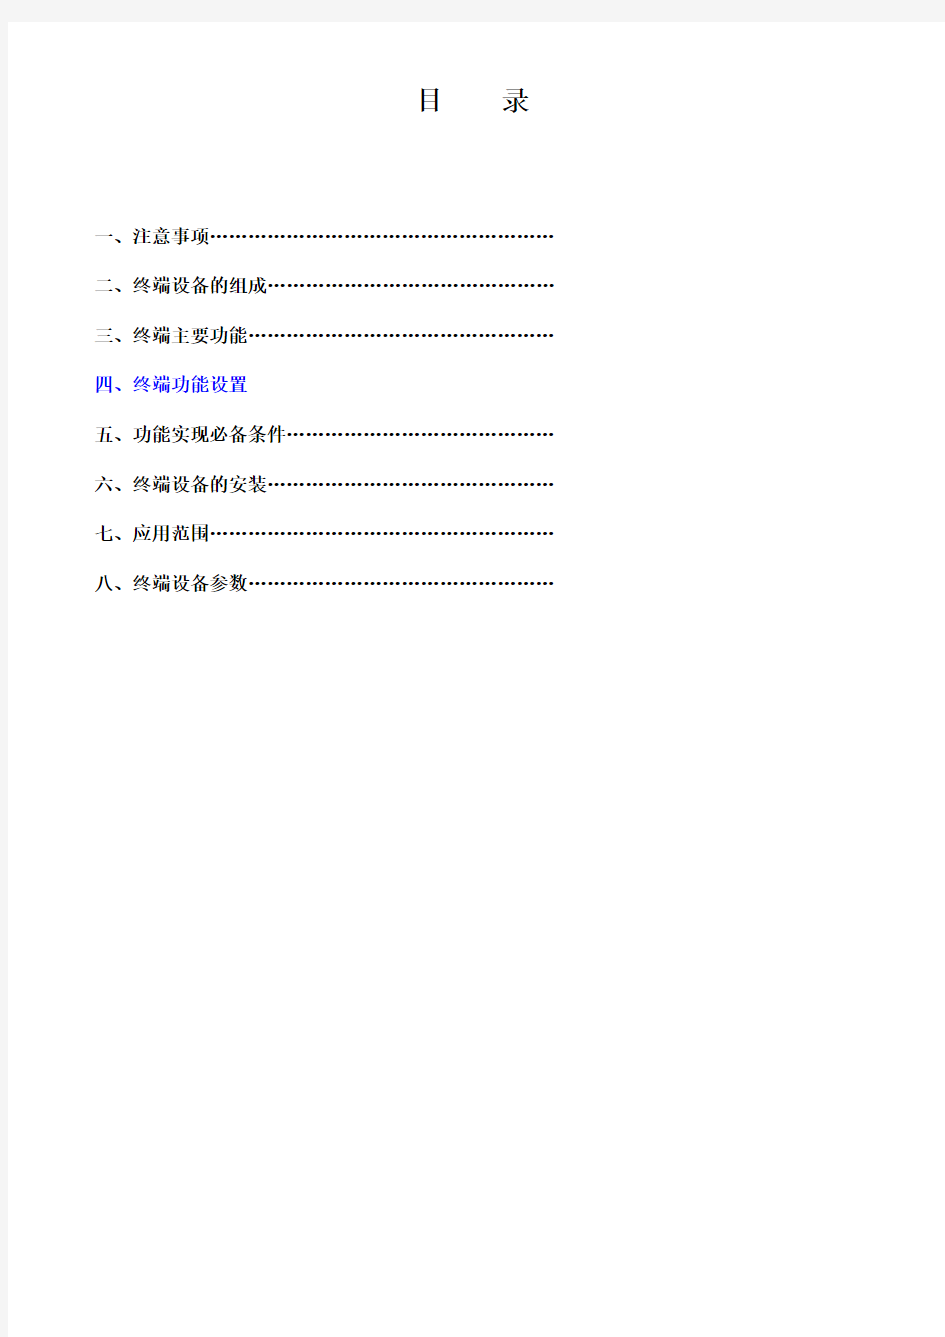 360汽车卫士(精英版)中文使用说明书V1.0